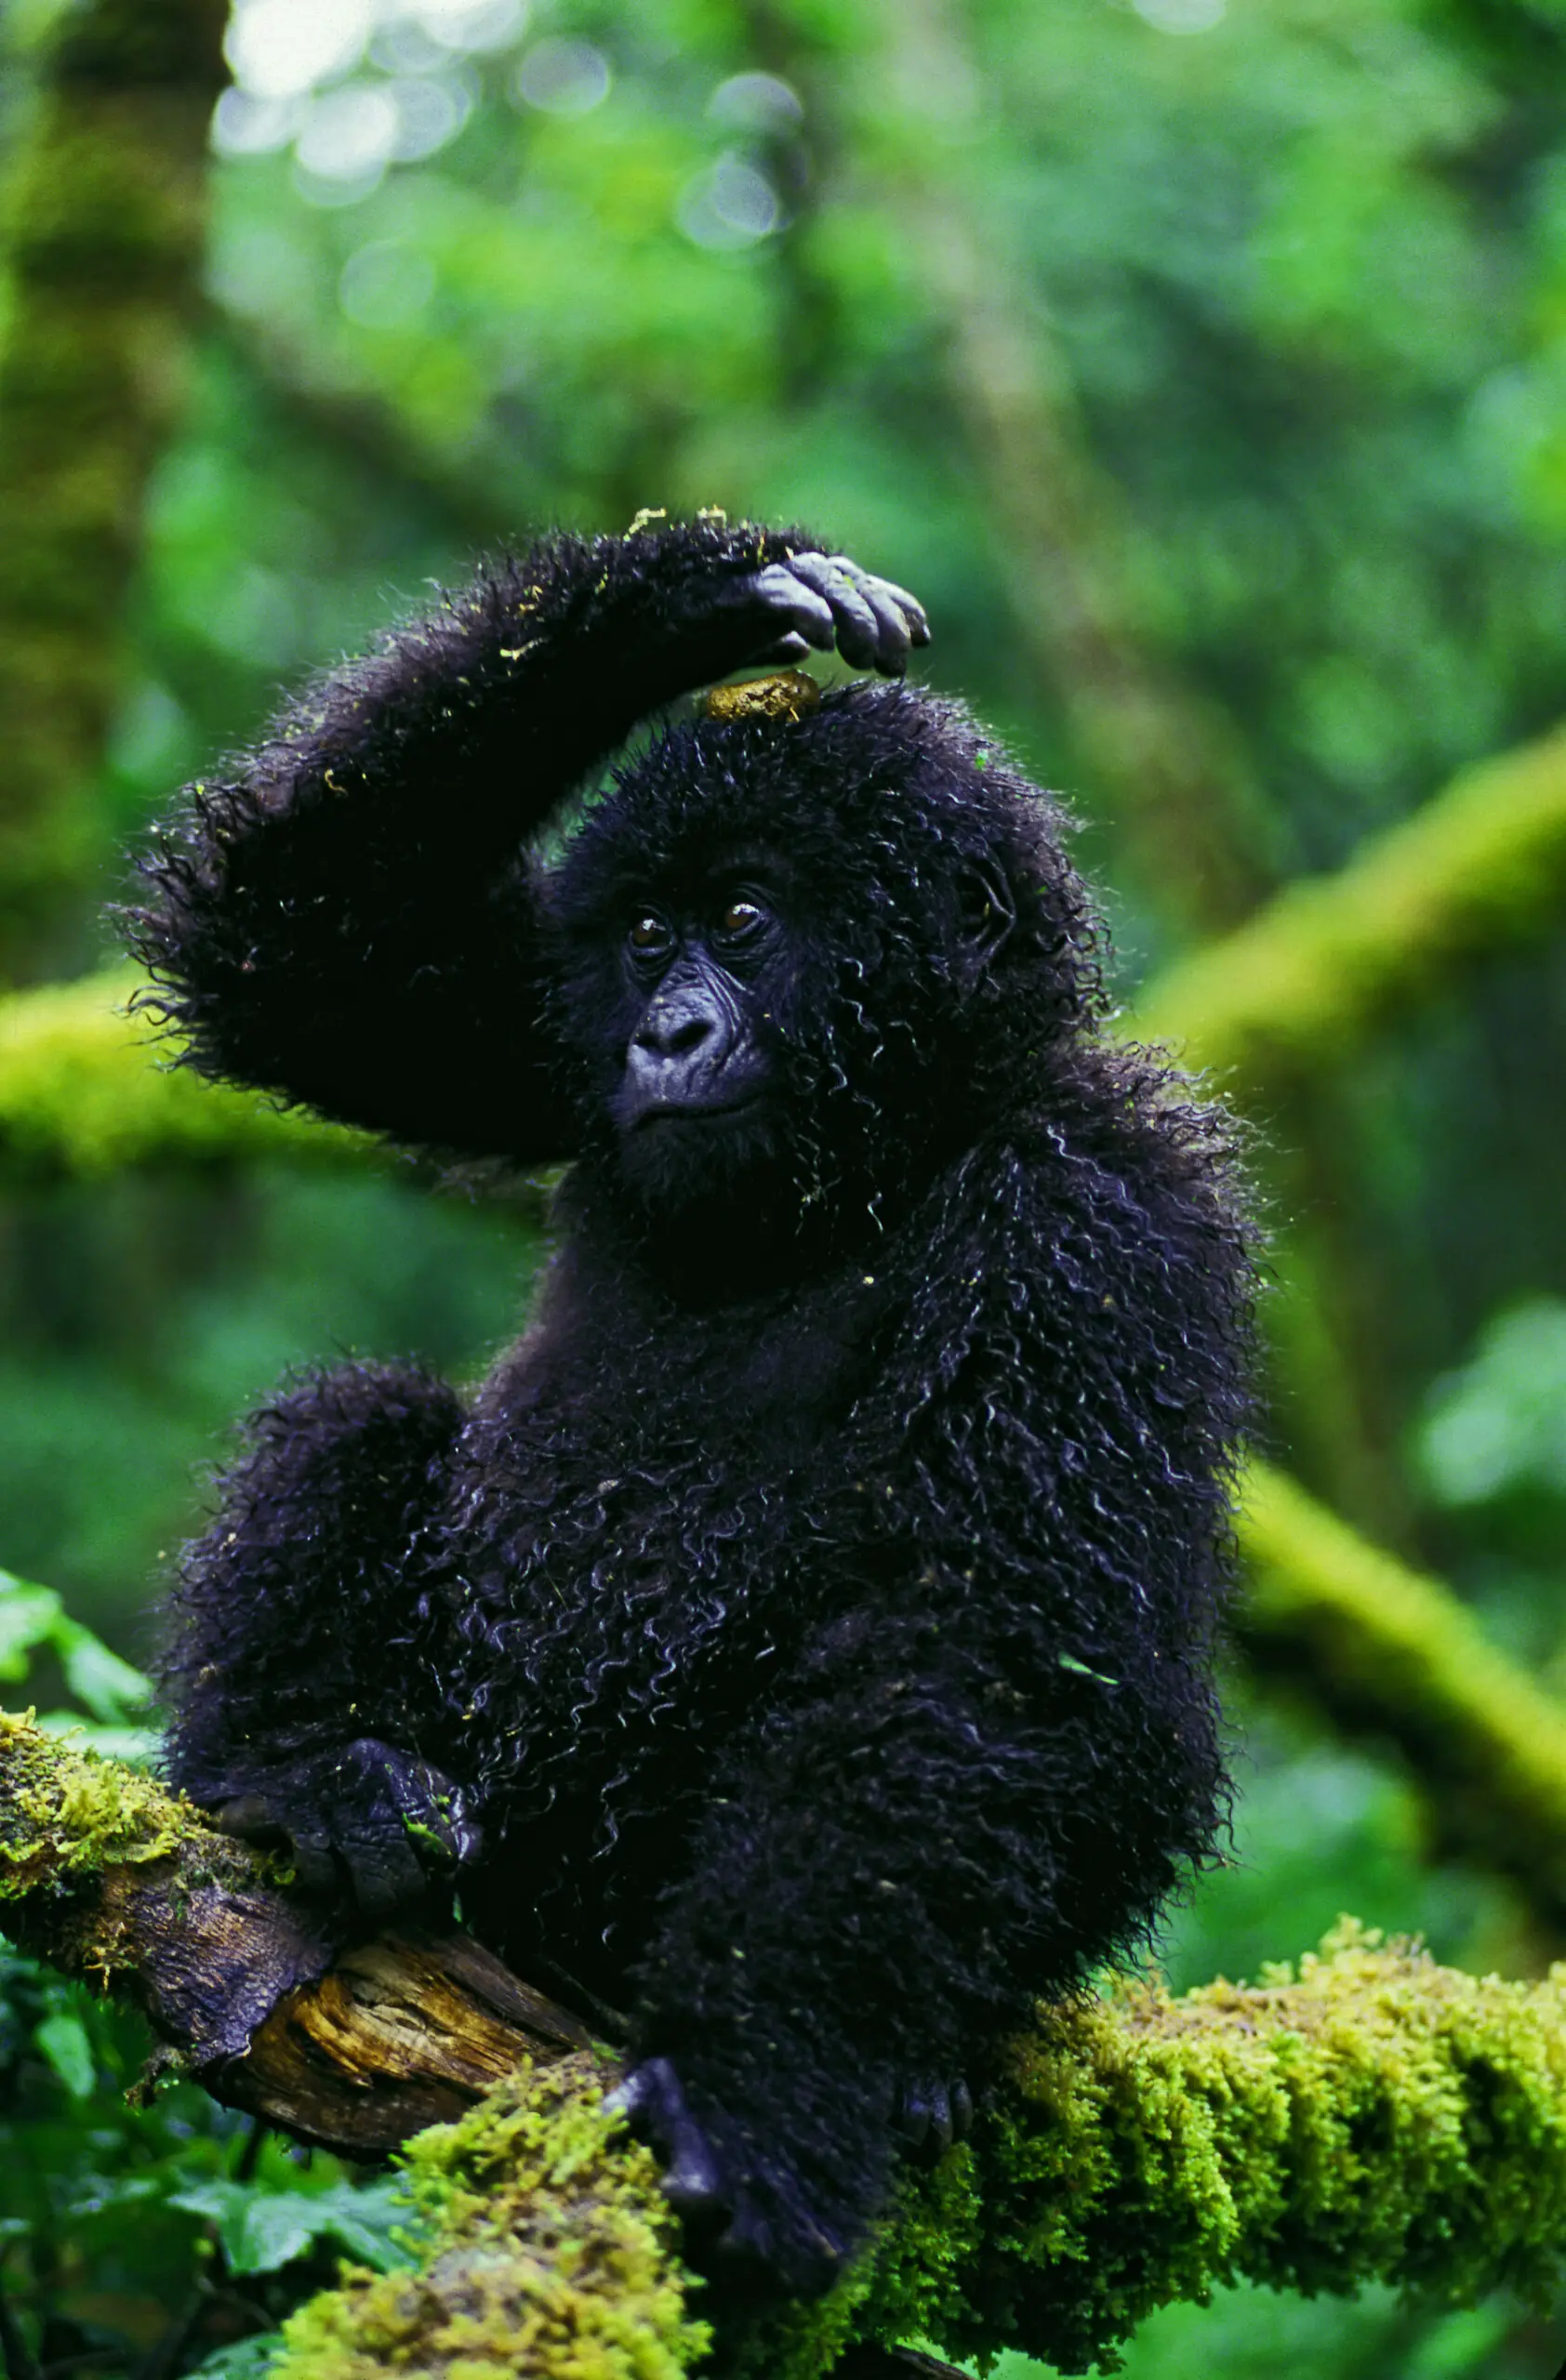 Wandbild (3735) Glanzlicht Gorilla präsentiert: Tiere,Wildtiere,Aus Afrika